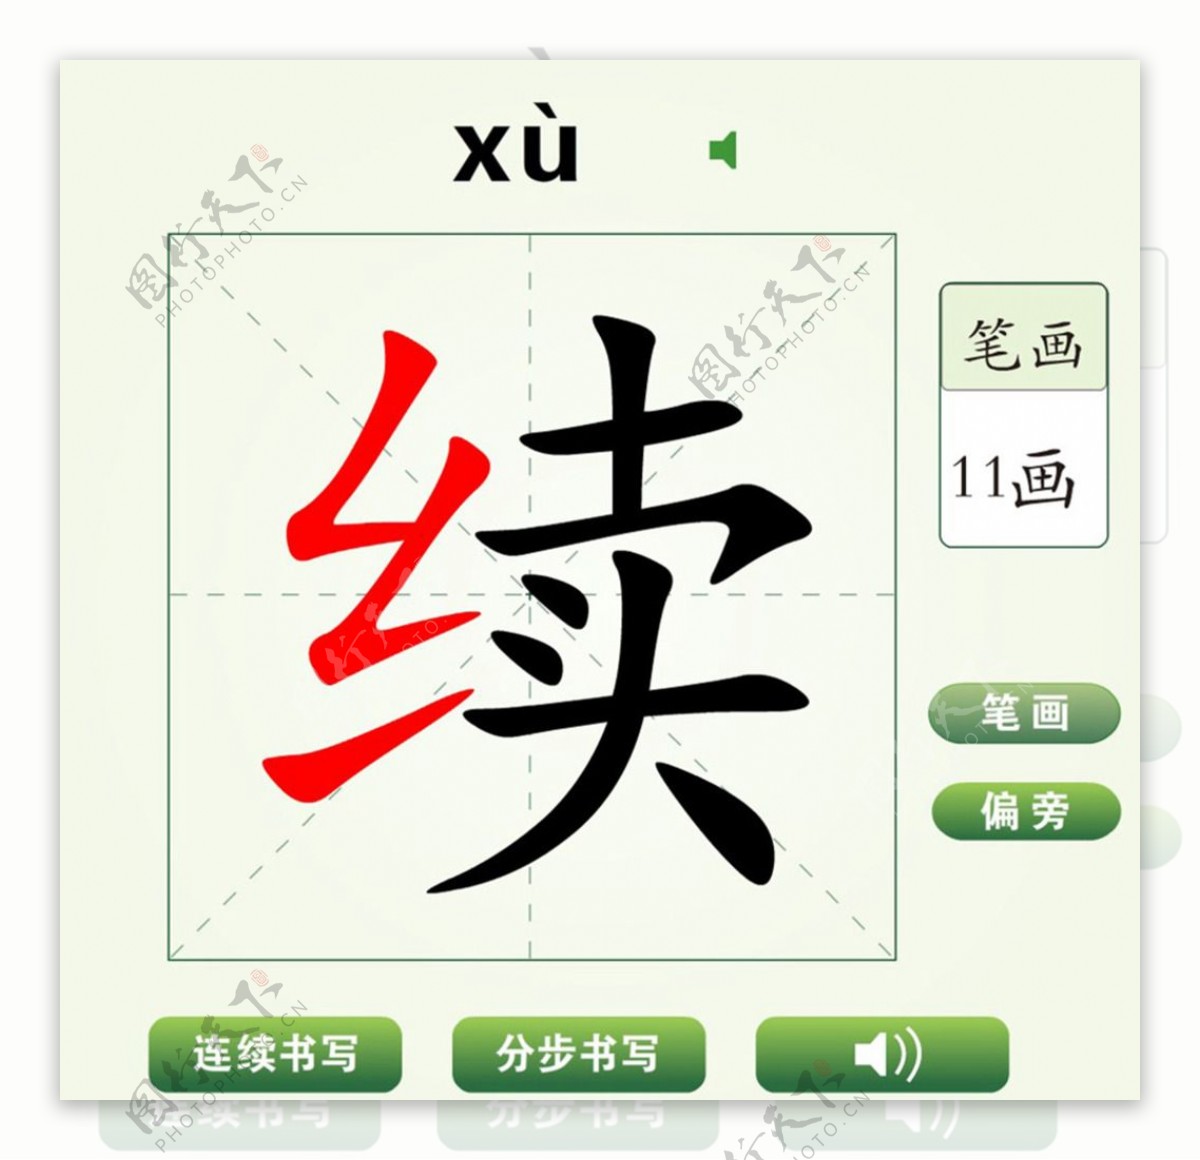 中国汉字续字笔画教学动画视频